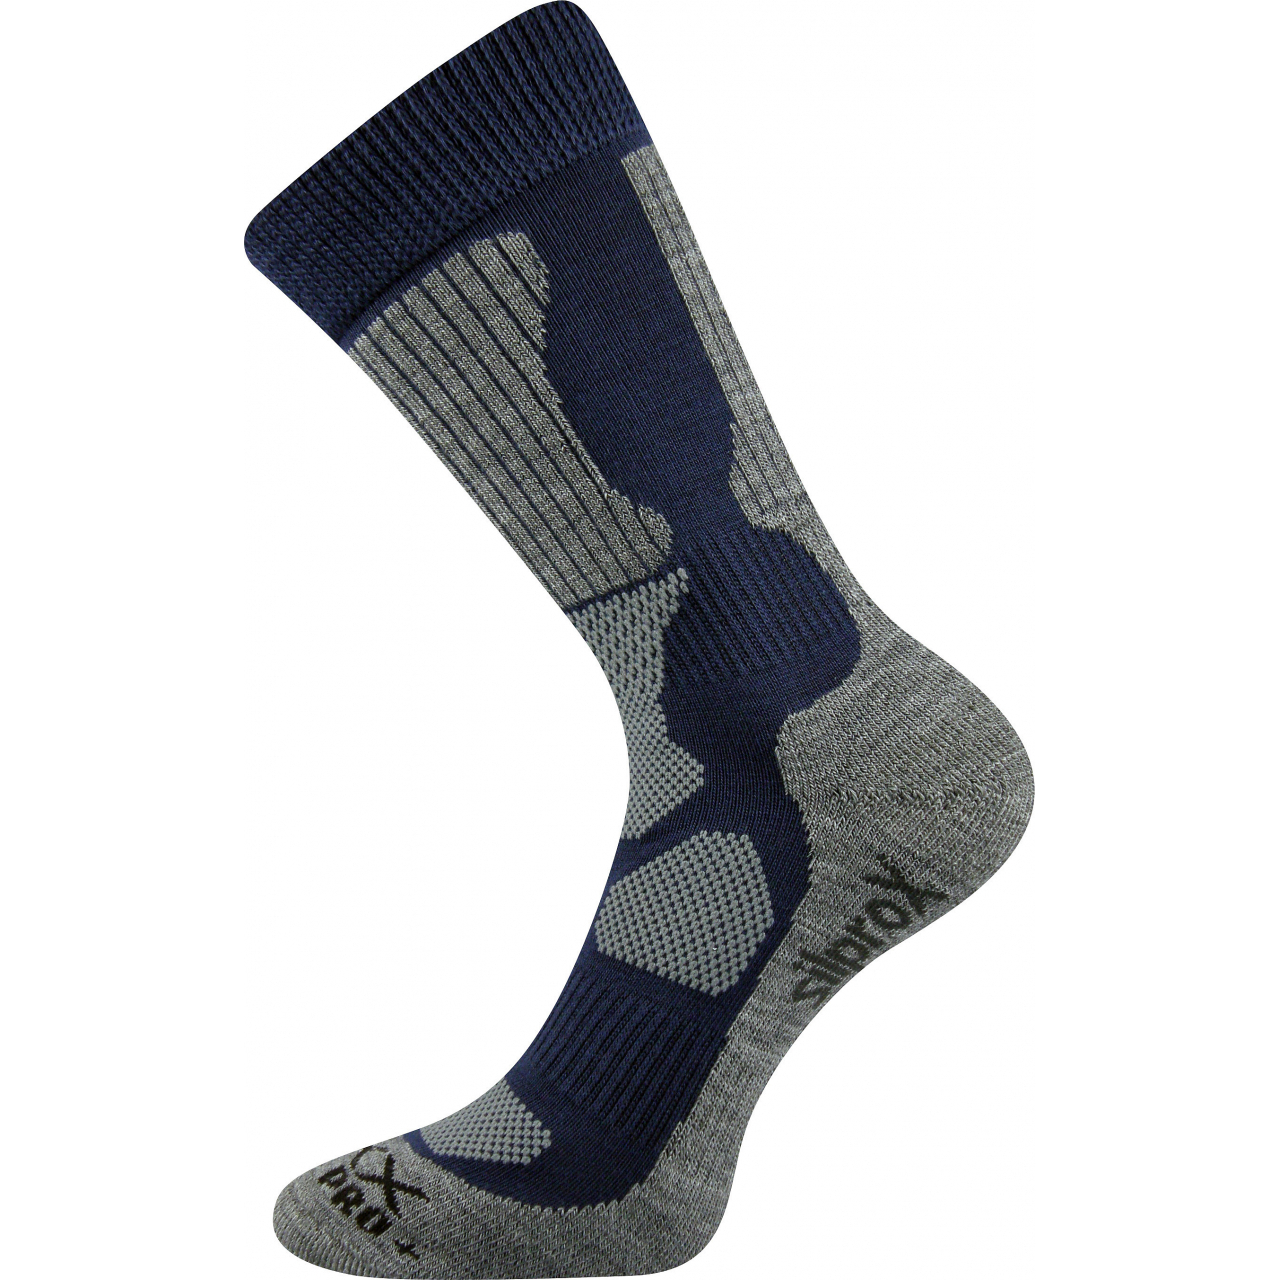 Ponožky sportovní Voxx Etrex - navy-šedé, 35-38